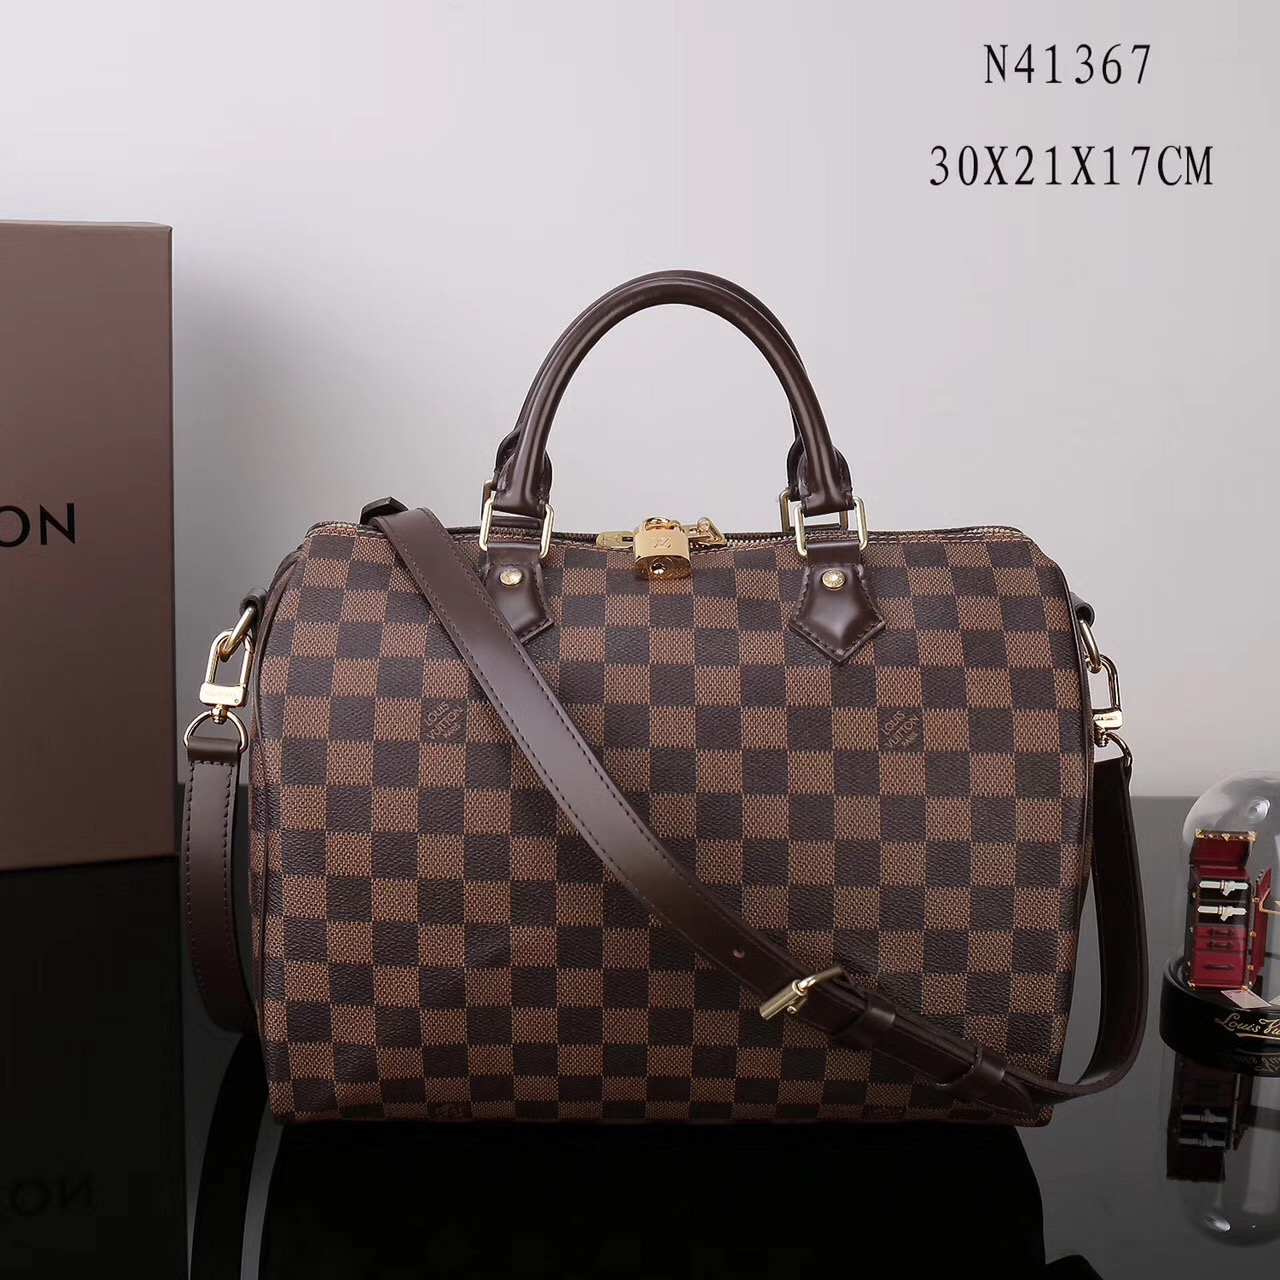 LV Louis Vuitton N41367 Speedy Damier 30 bags Handbags Brown